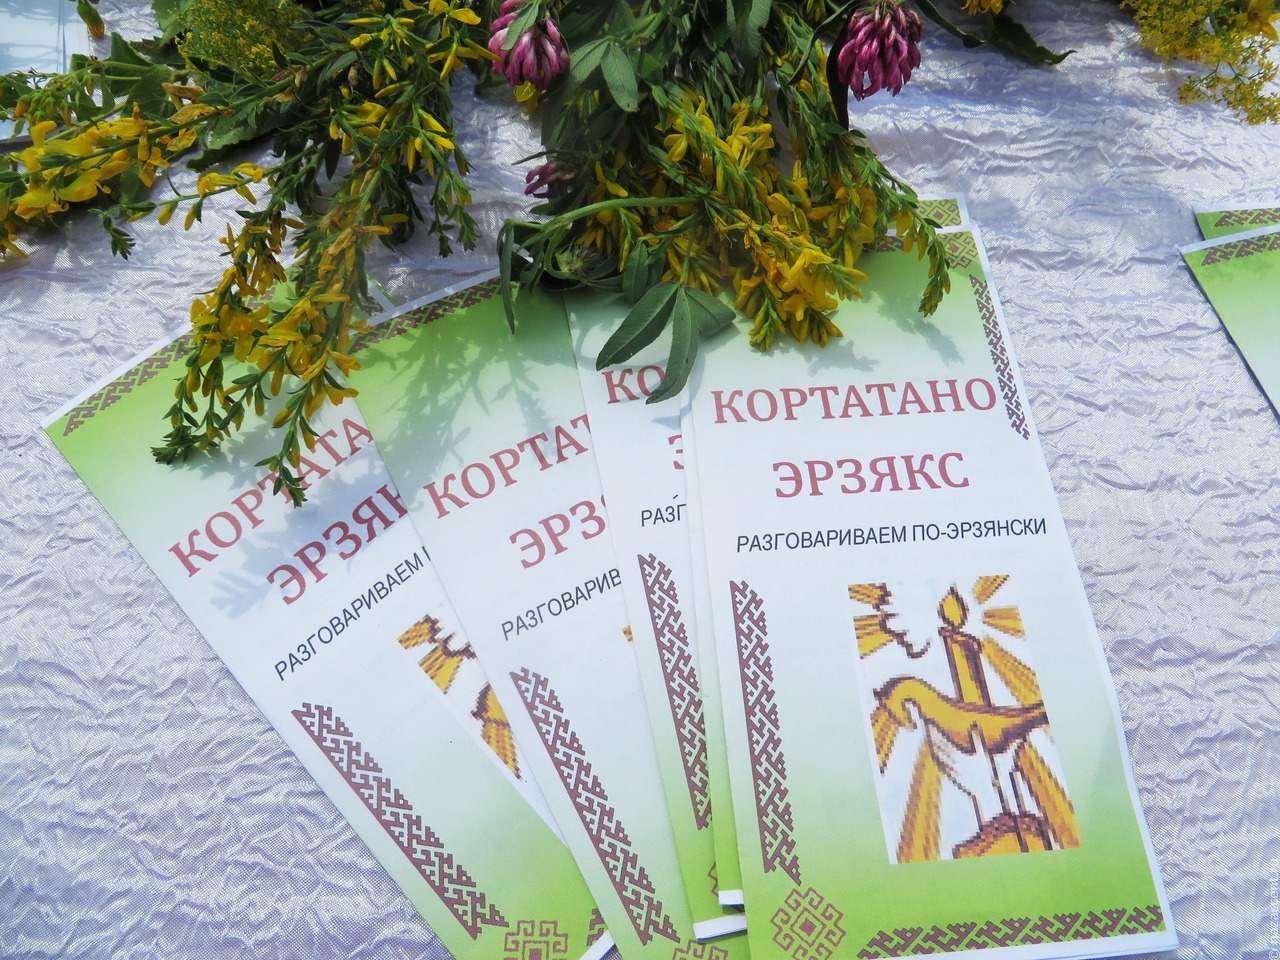 Диктант на мордовских языках написали более 3,5 тысячи человек